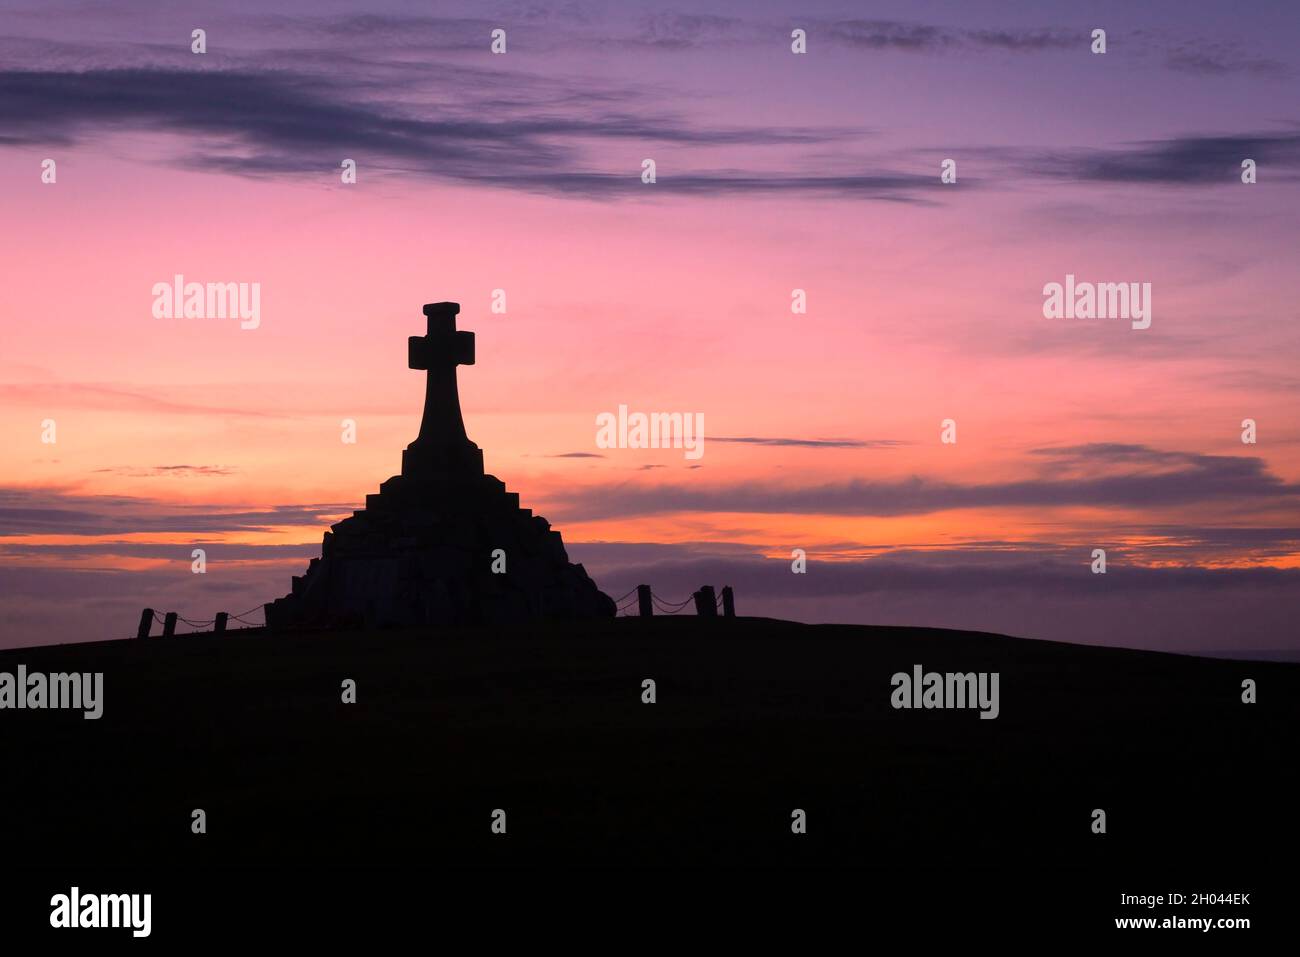 L'imponente monumento commemorativo della guerra di Newquay fu sguainato contro un tramonto drammatico in Cornovaglia. Foto Stock